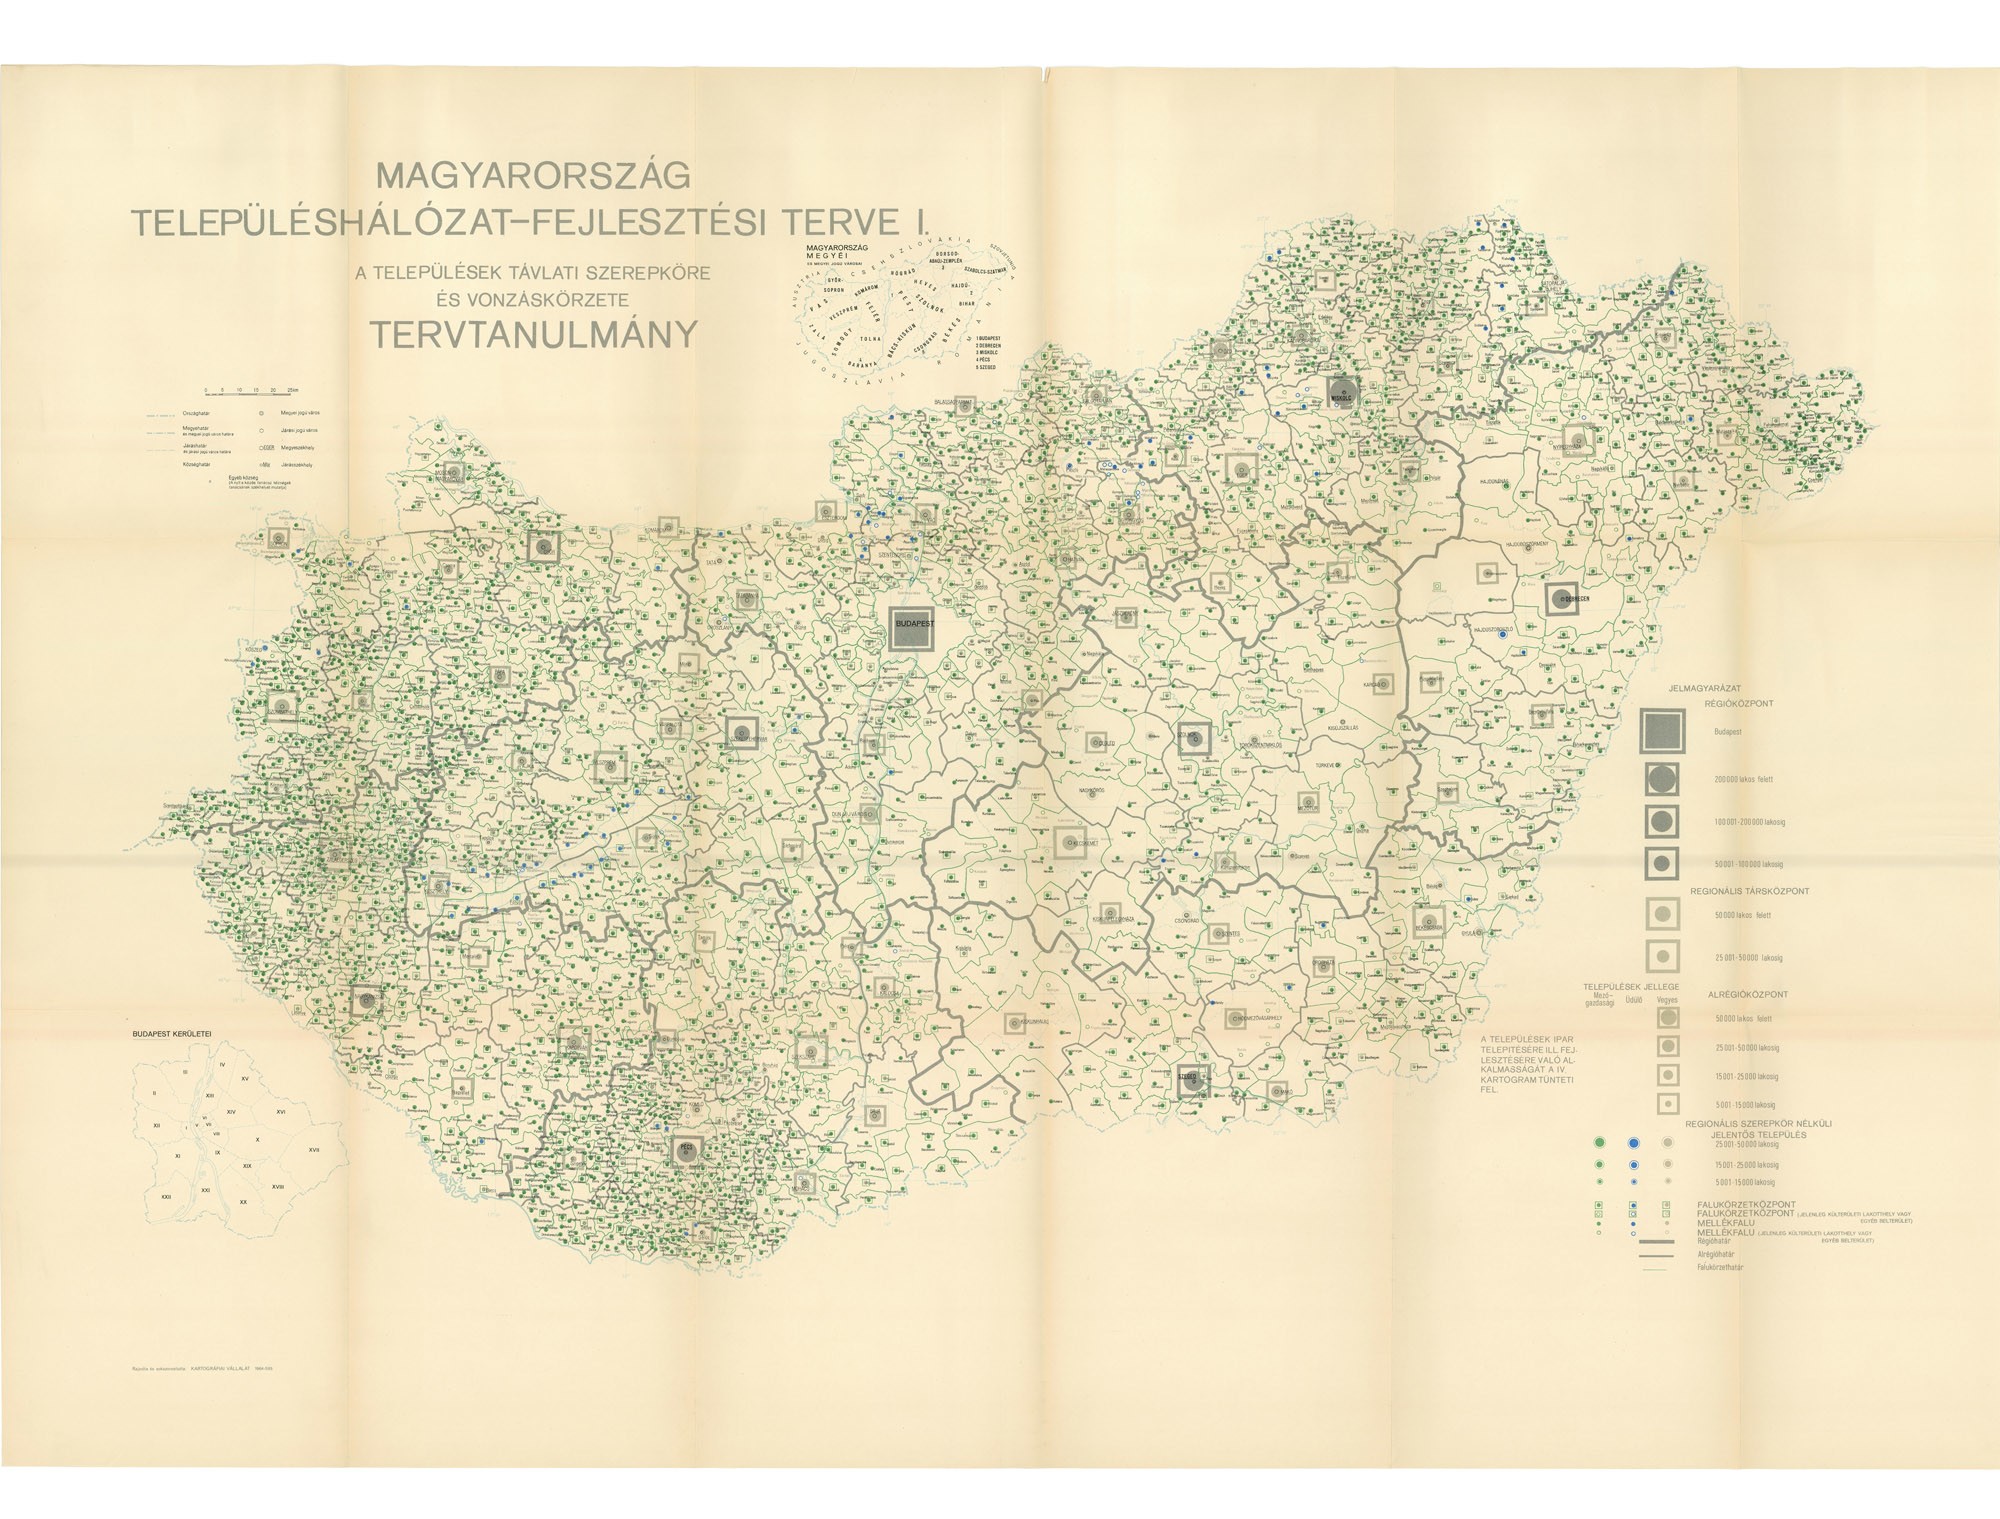 Magyarország településhálózat-fejlesztési terve I. (Postamúzeum CC BY-NC-SA)